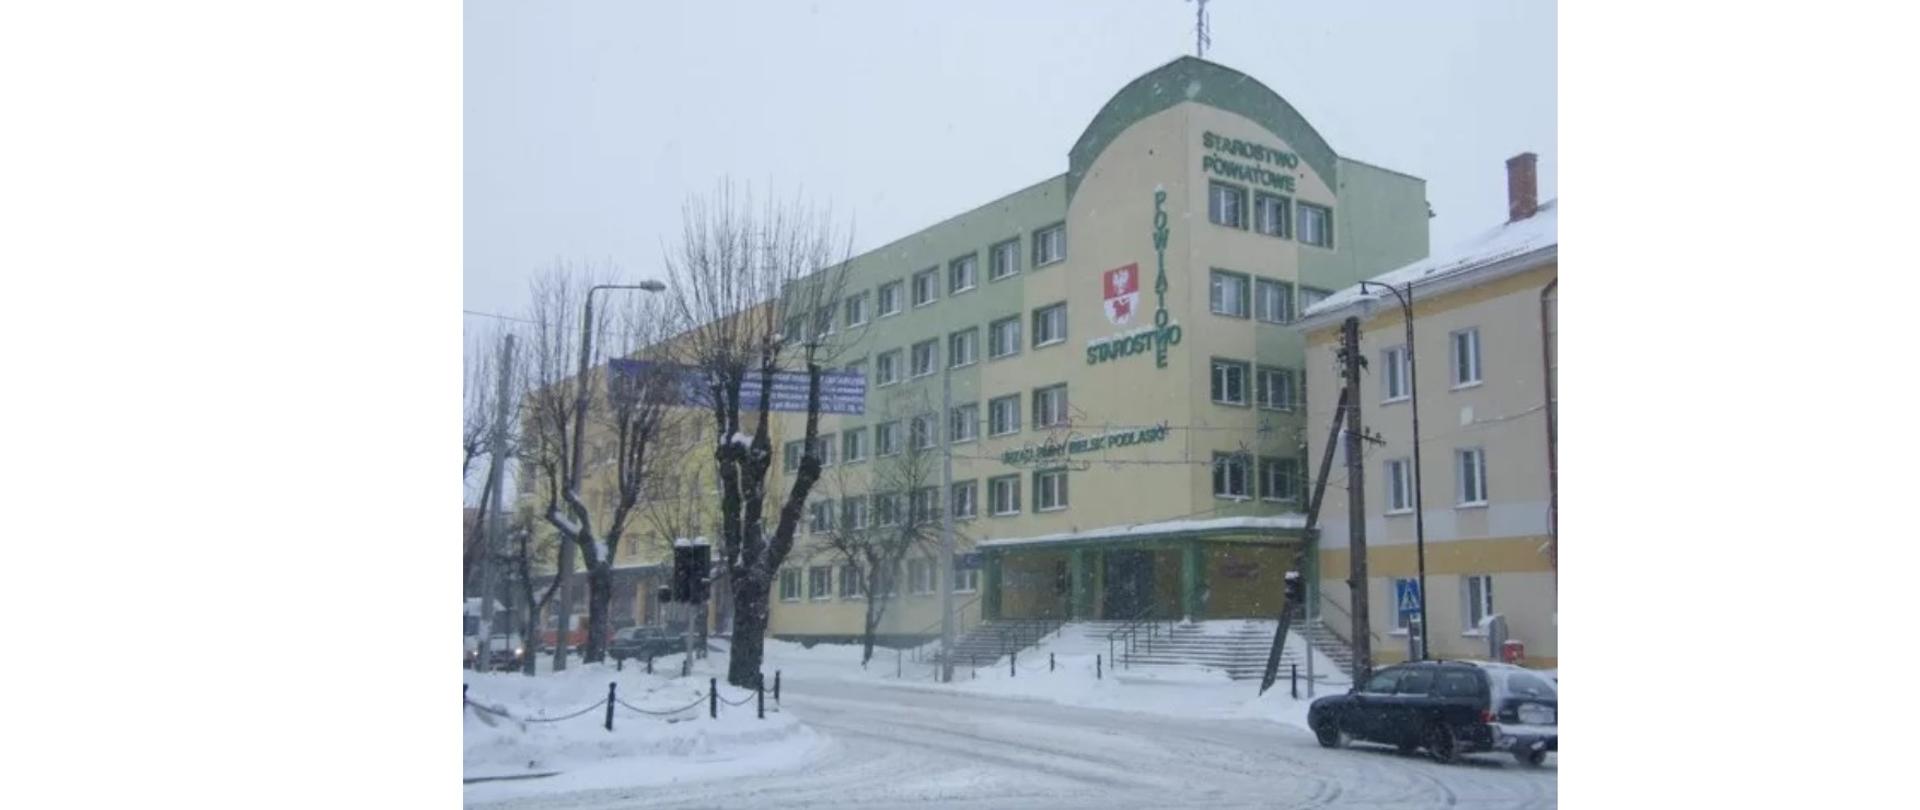 Starostwo Powiatowe w Bielsku Podlaskim - widok zimą